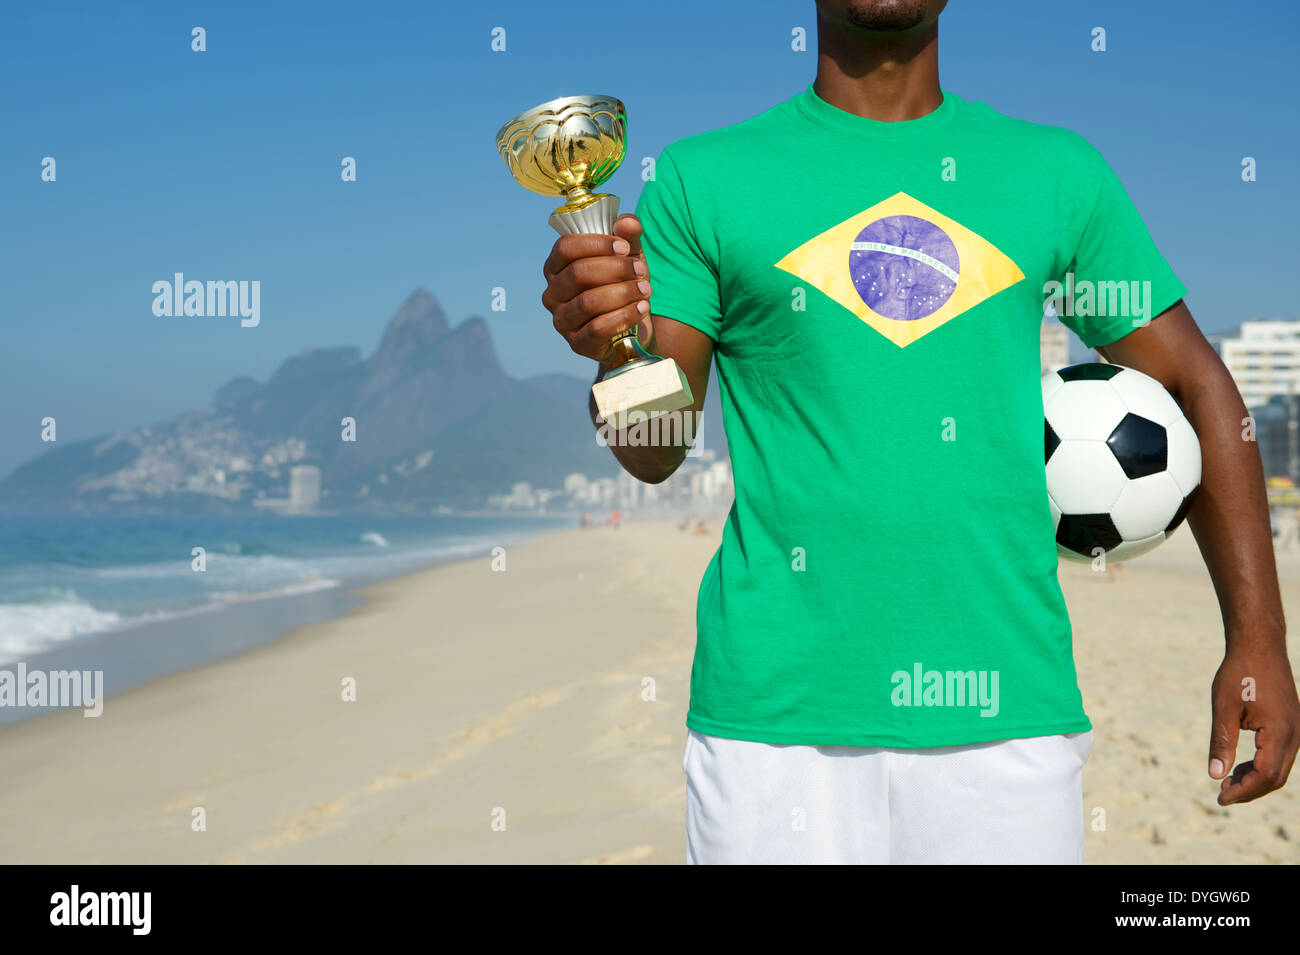 Champion Brazilian soccer player holding trophy et du football en drapeau brésilien shirt plage Ipanema Rio de Janeiro Brésil Banque D'Images